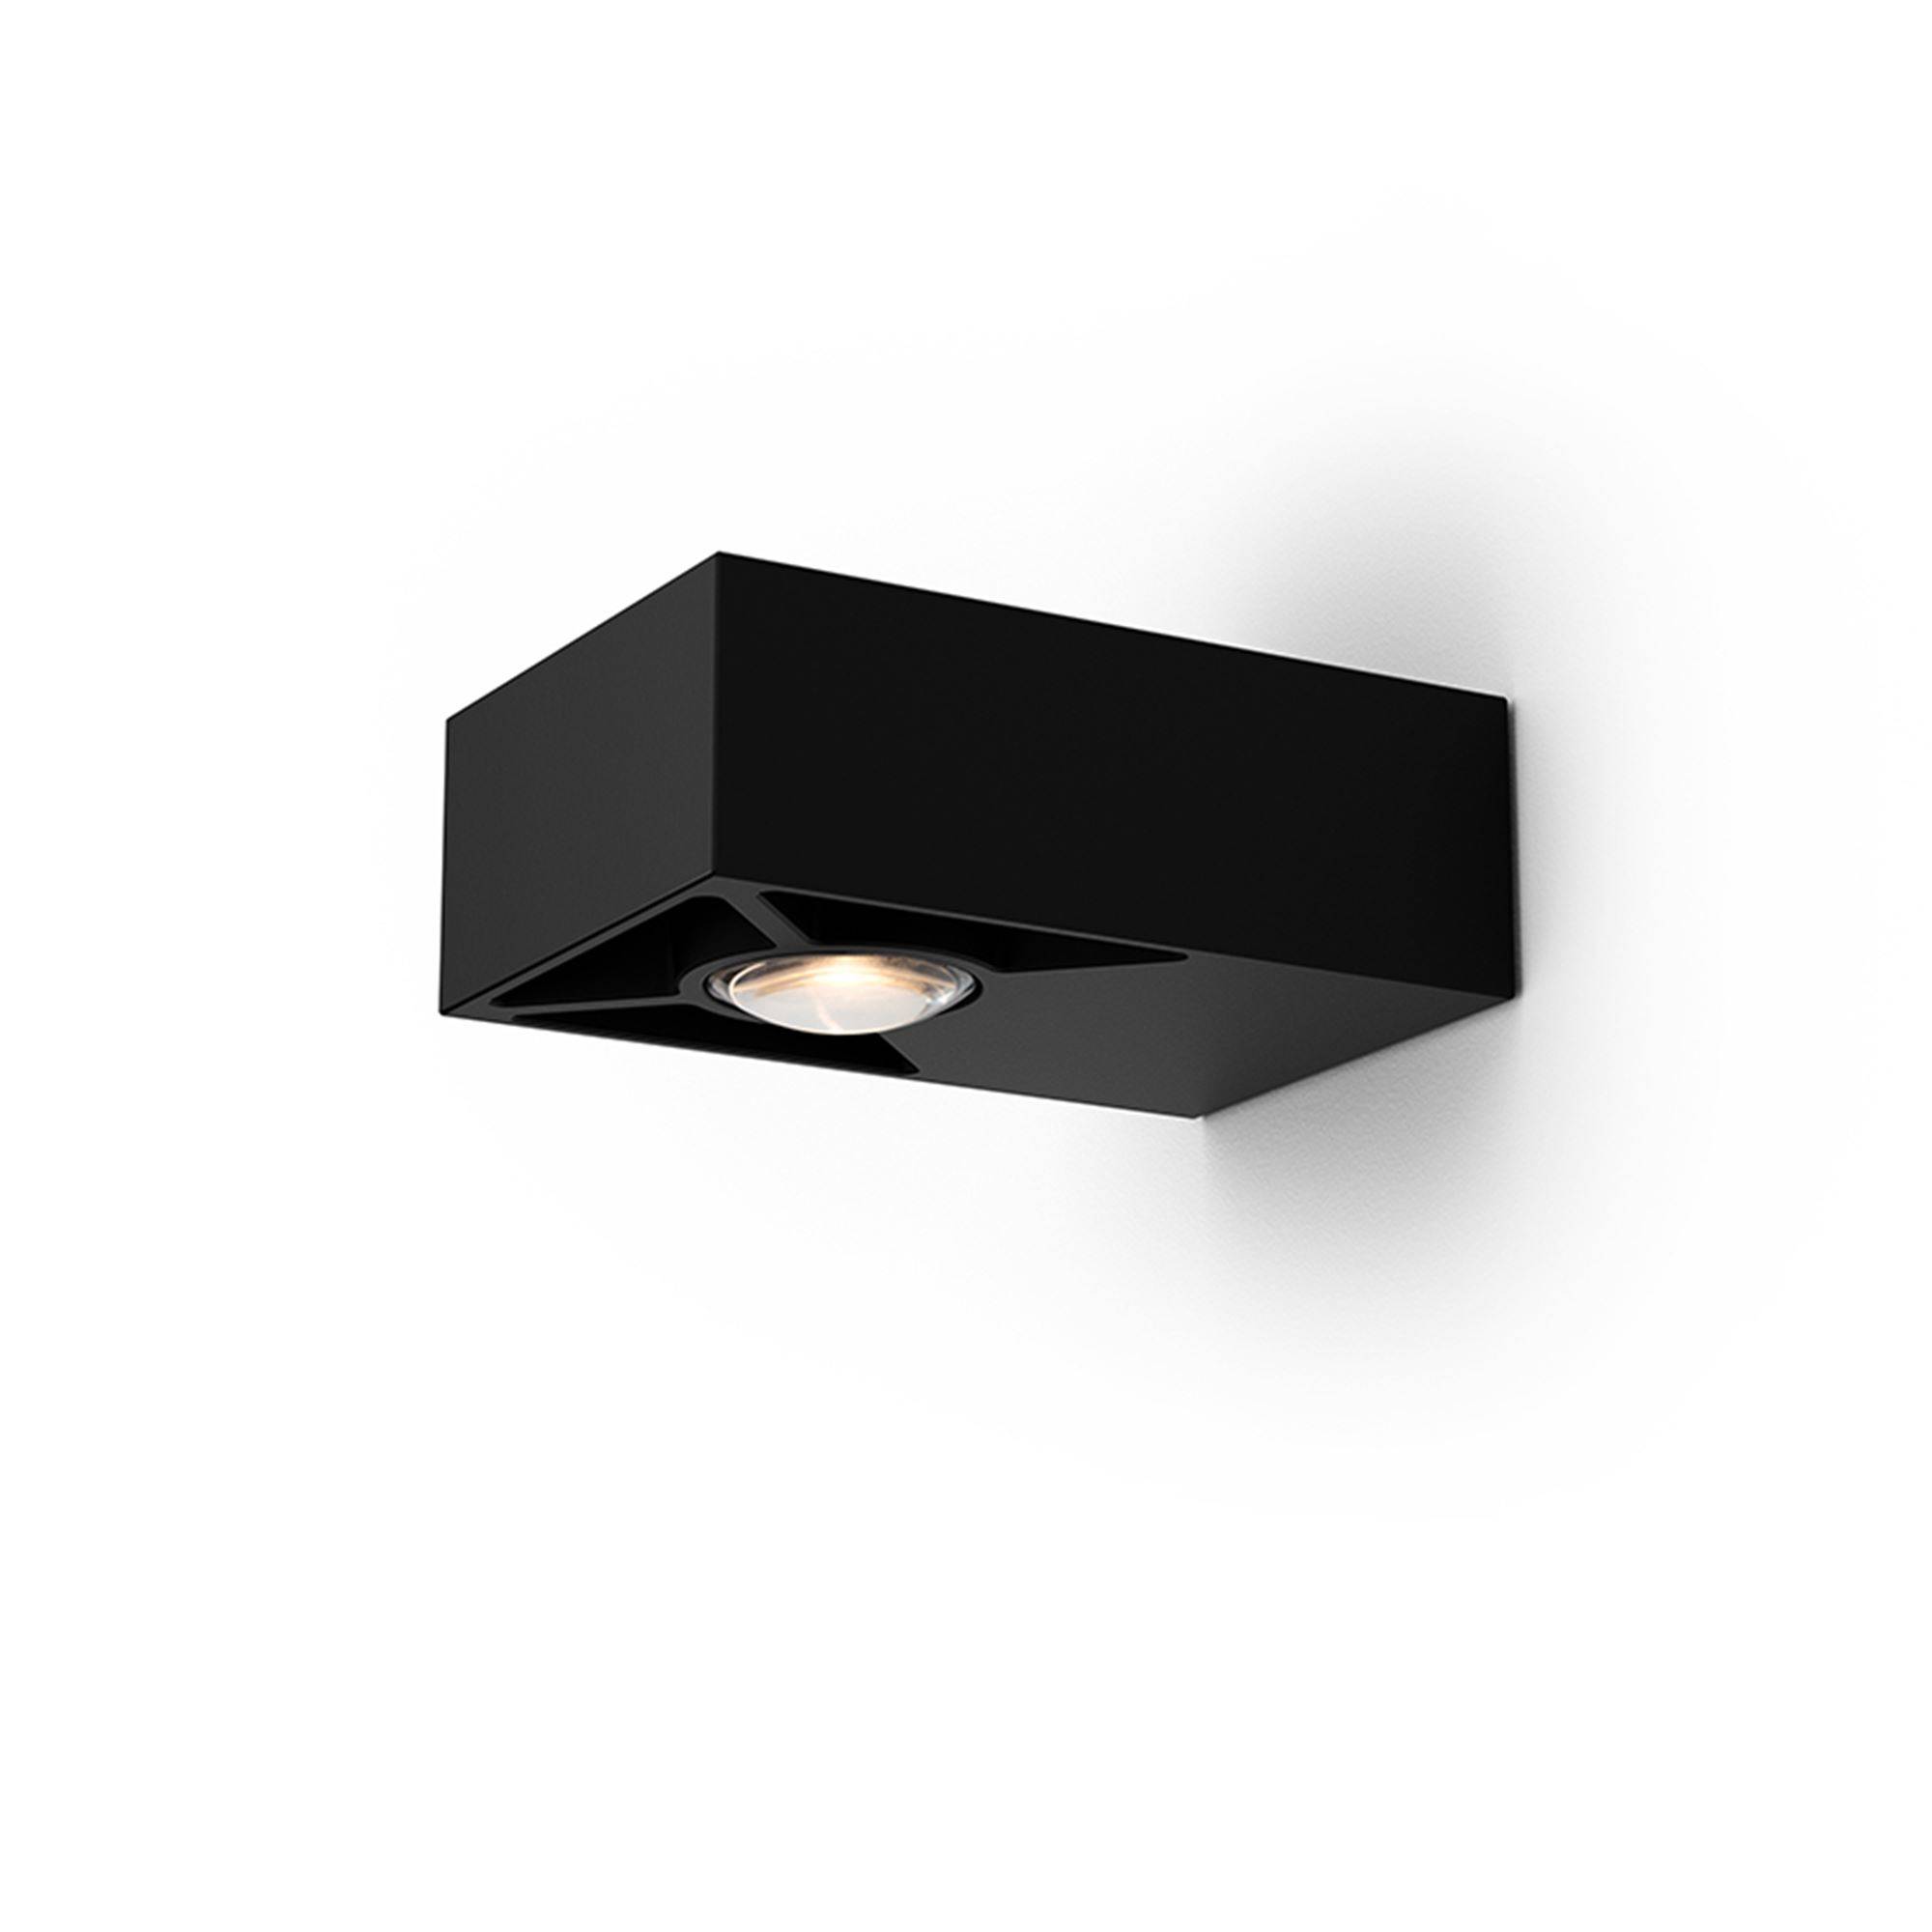 Aqform :: Kinkiet GOLO LED czarny gł. 12 cm